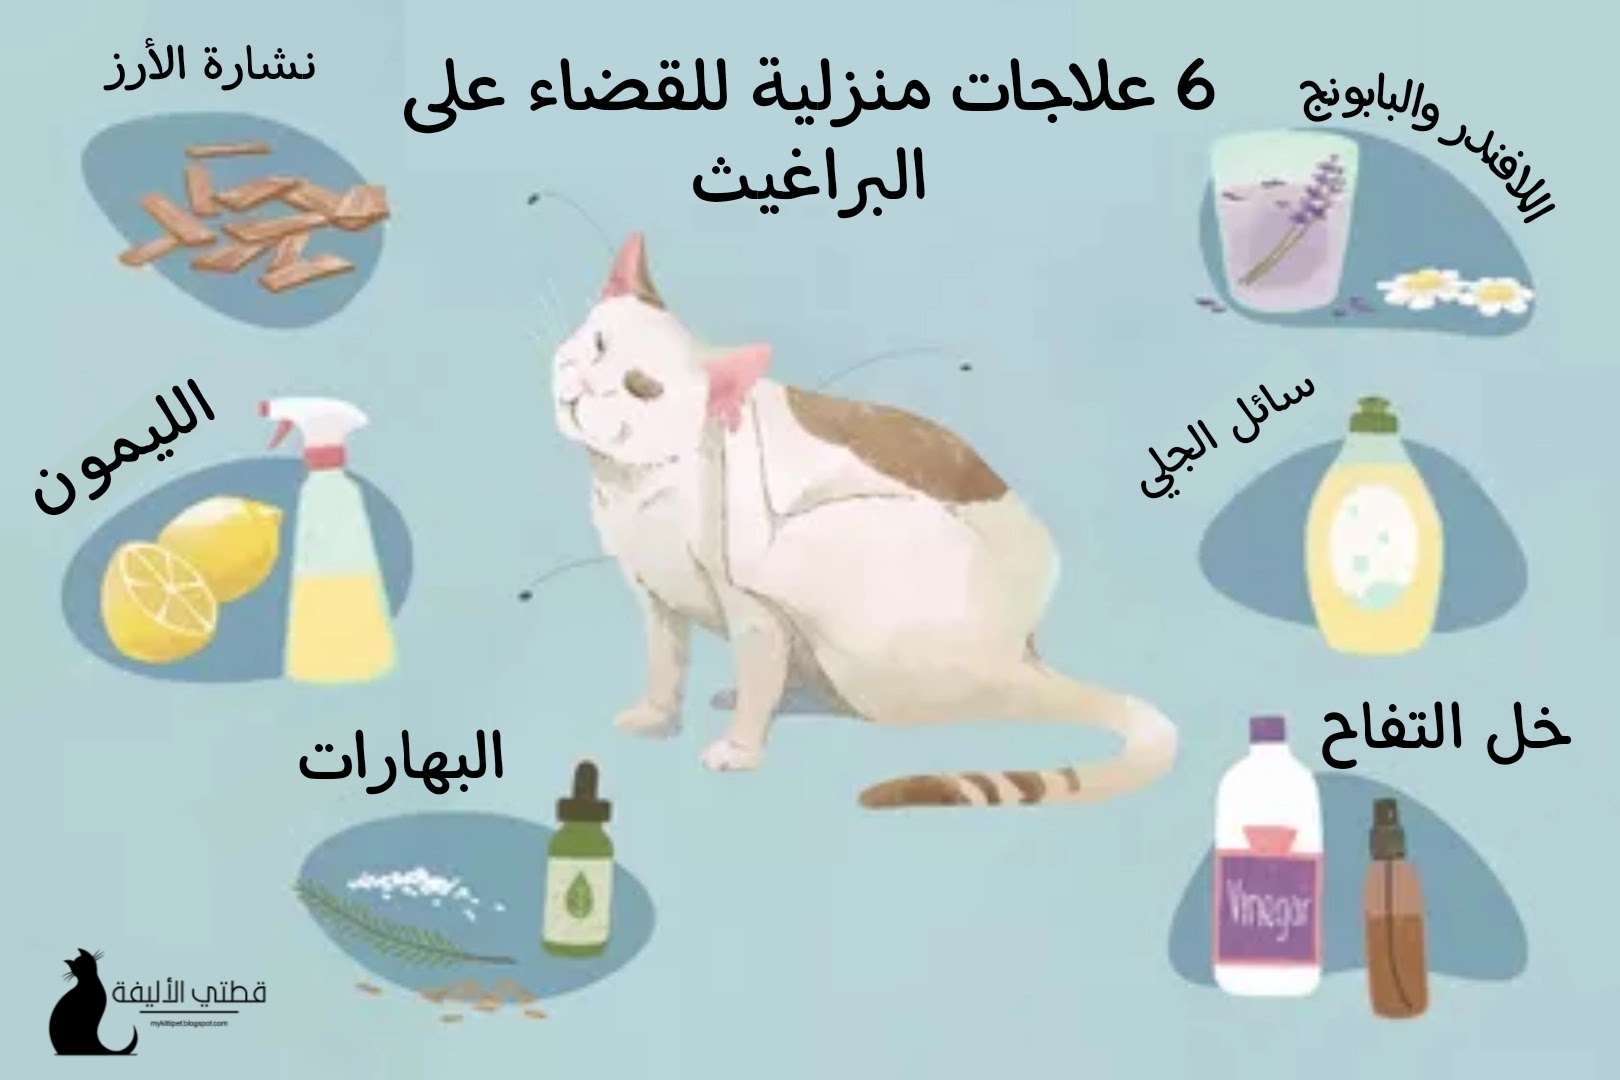 6 علاجات منزلية للبراغيث في القطط